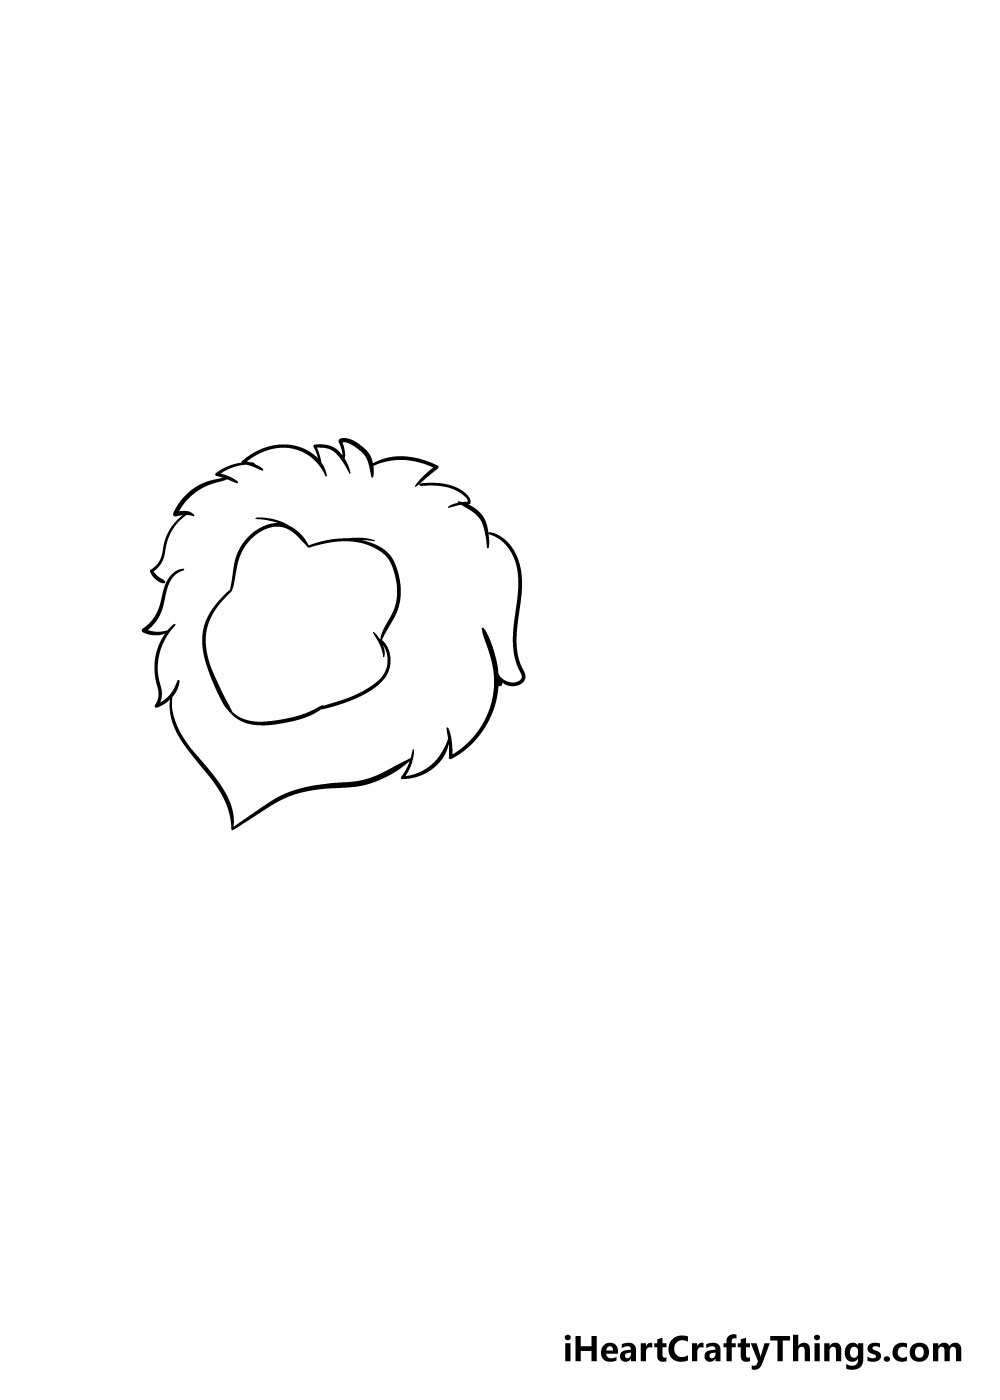 How to draw a lion 2 - Hướng dẫn cách vẽ con sư tử đơn giản với 8 bước cơ bản